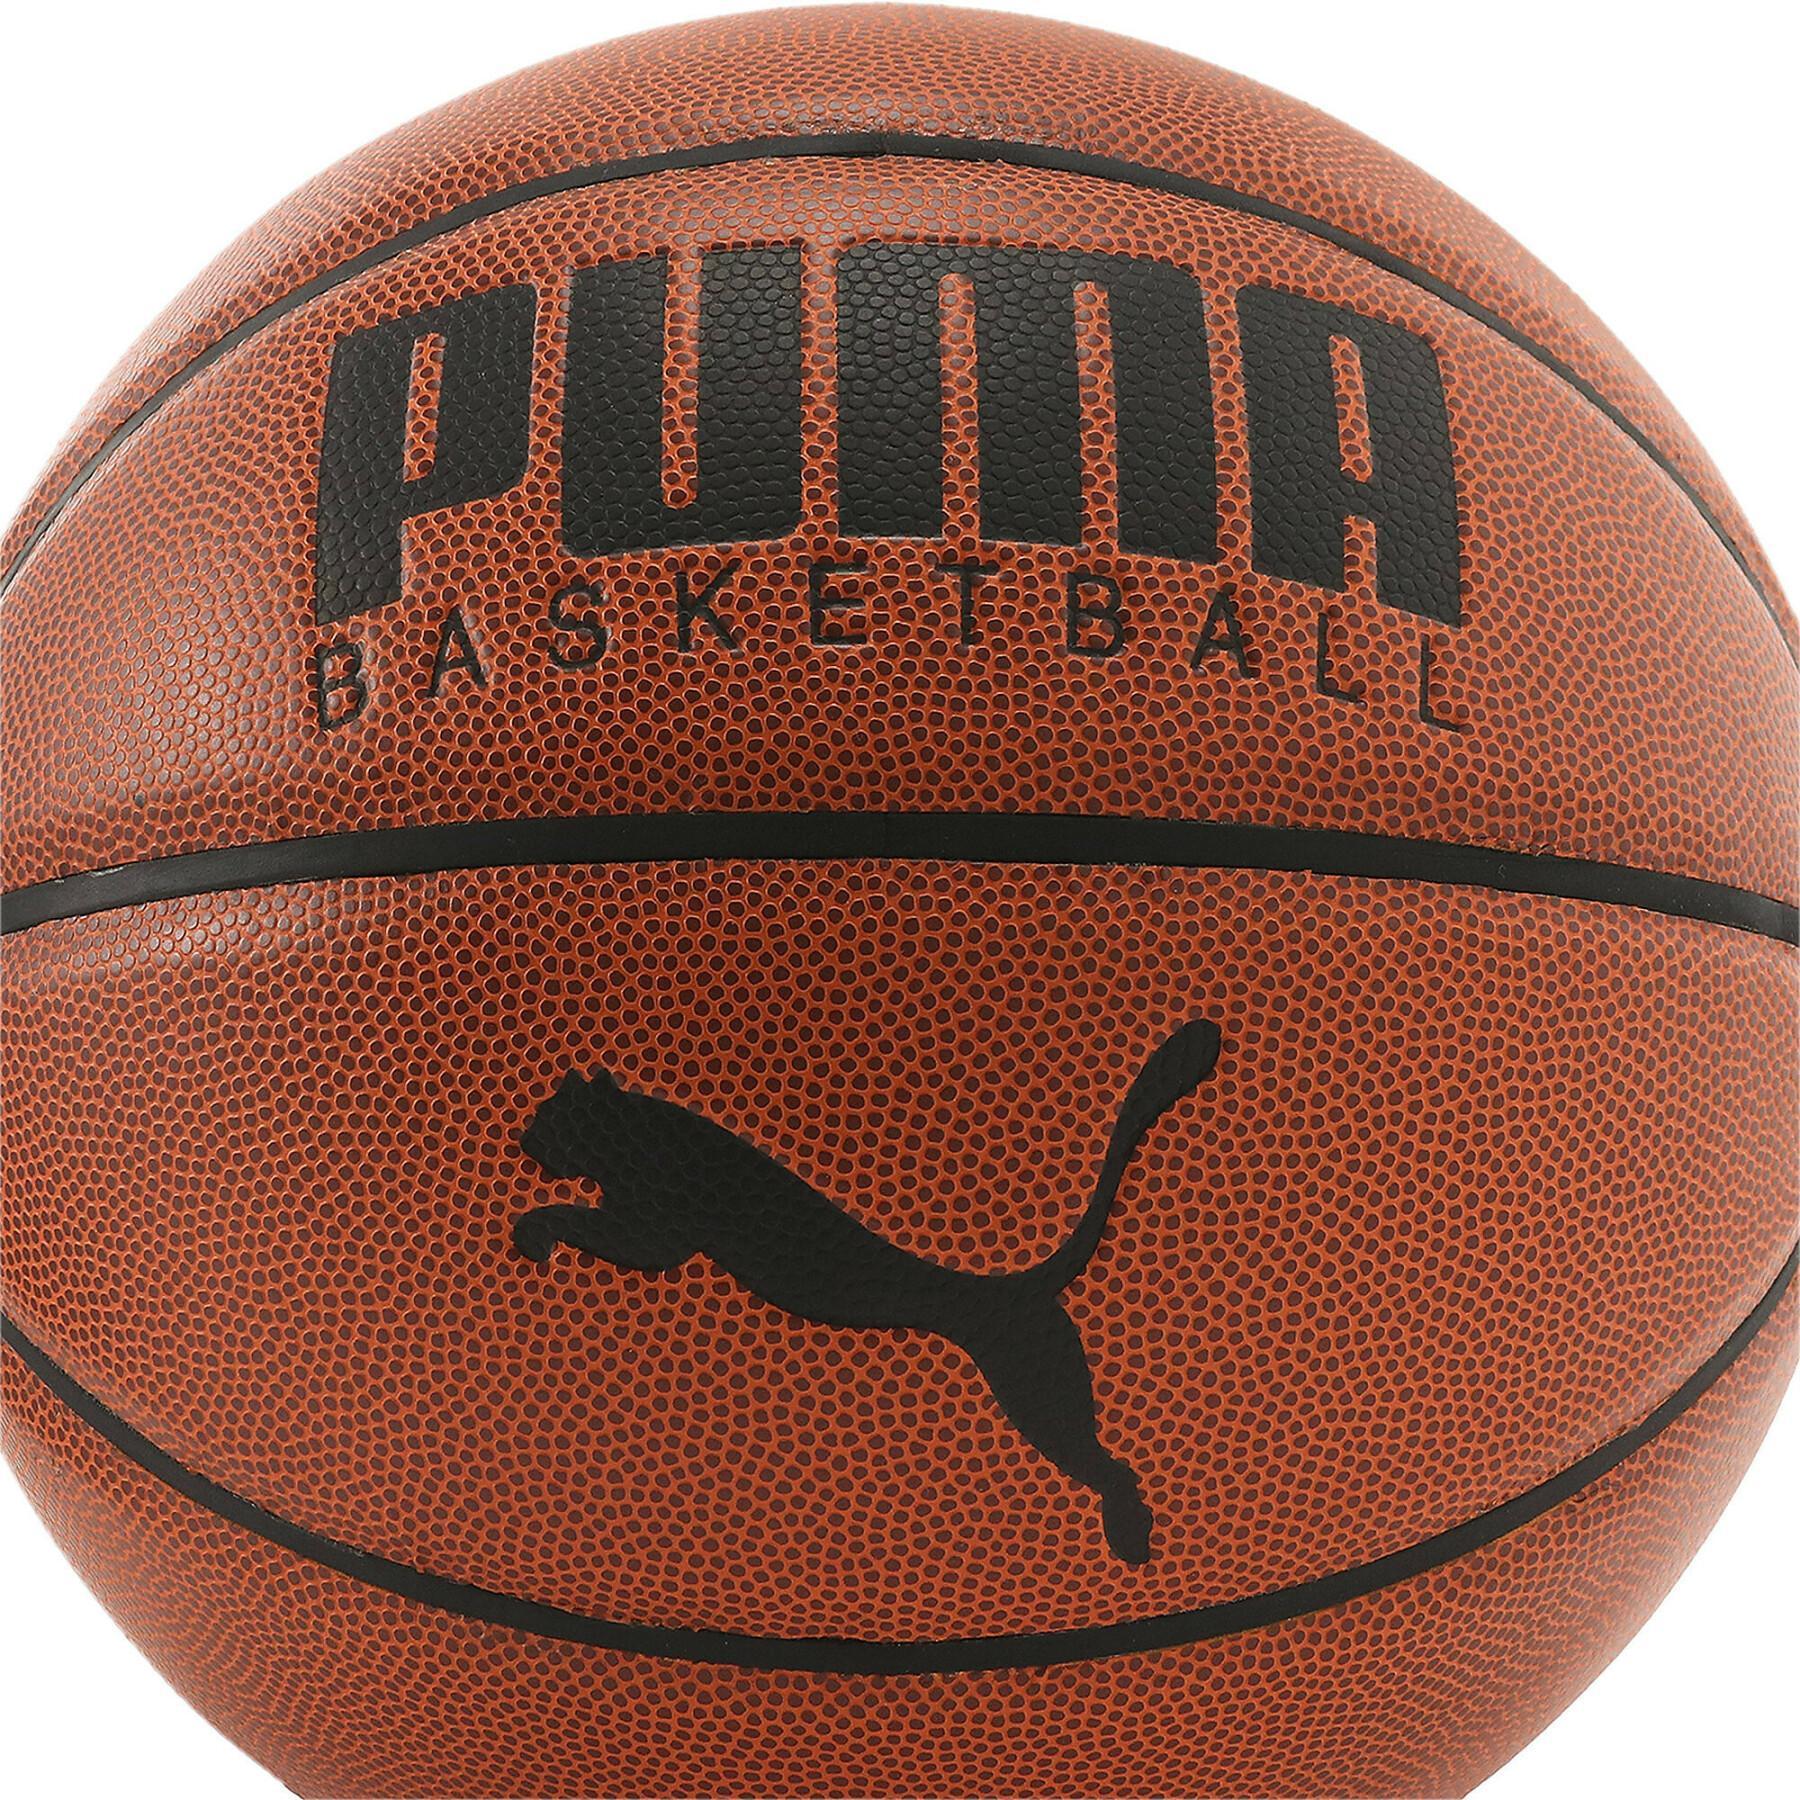 Balón Puma Basketball Top